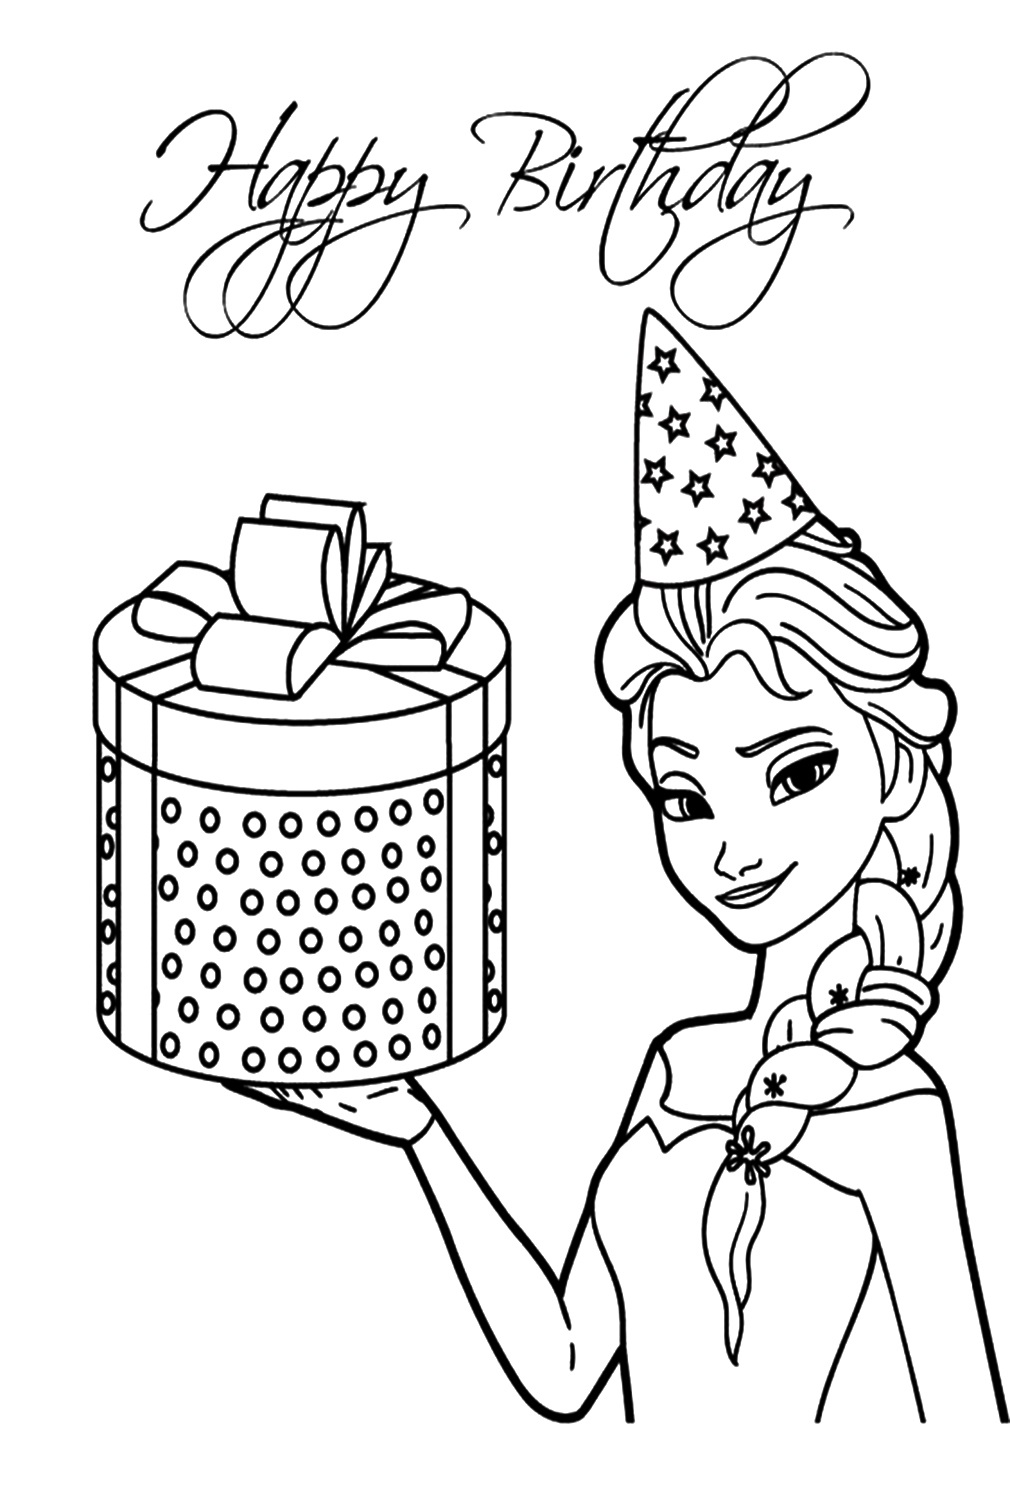 Elsa alles Gute zum Geburtstag Malvorlagen